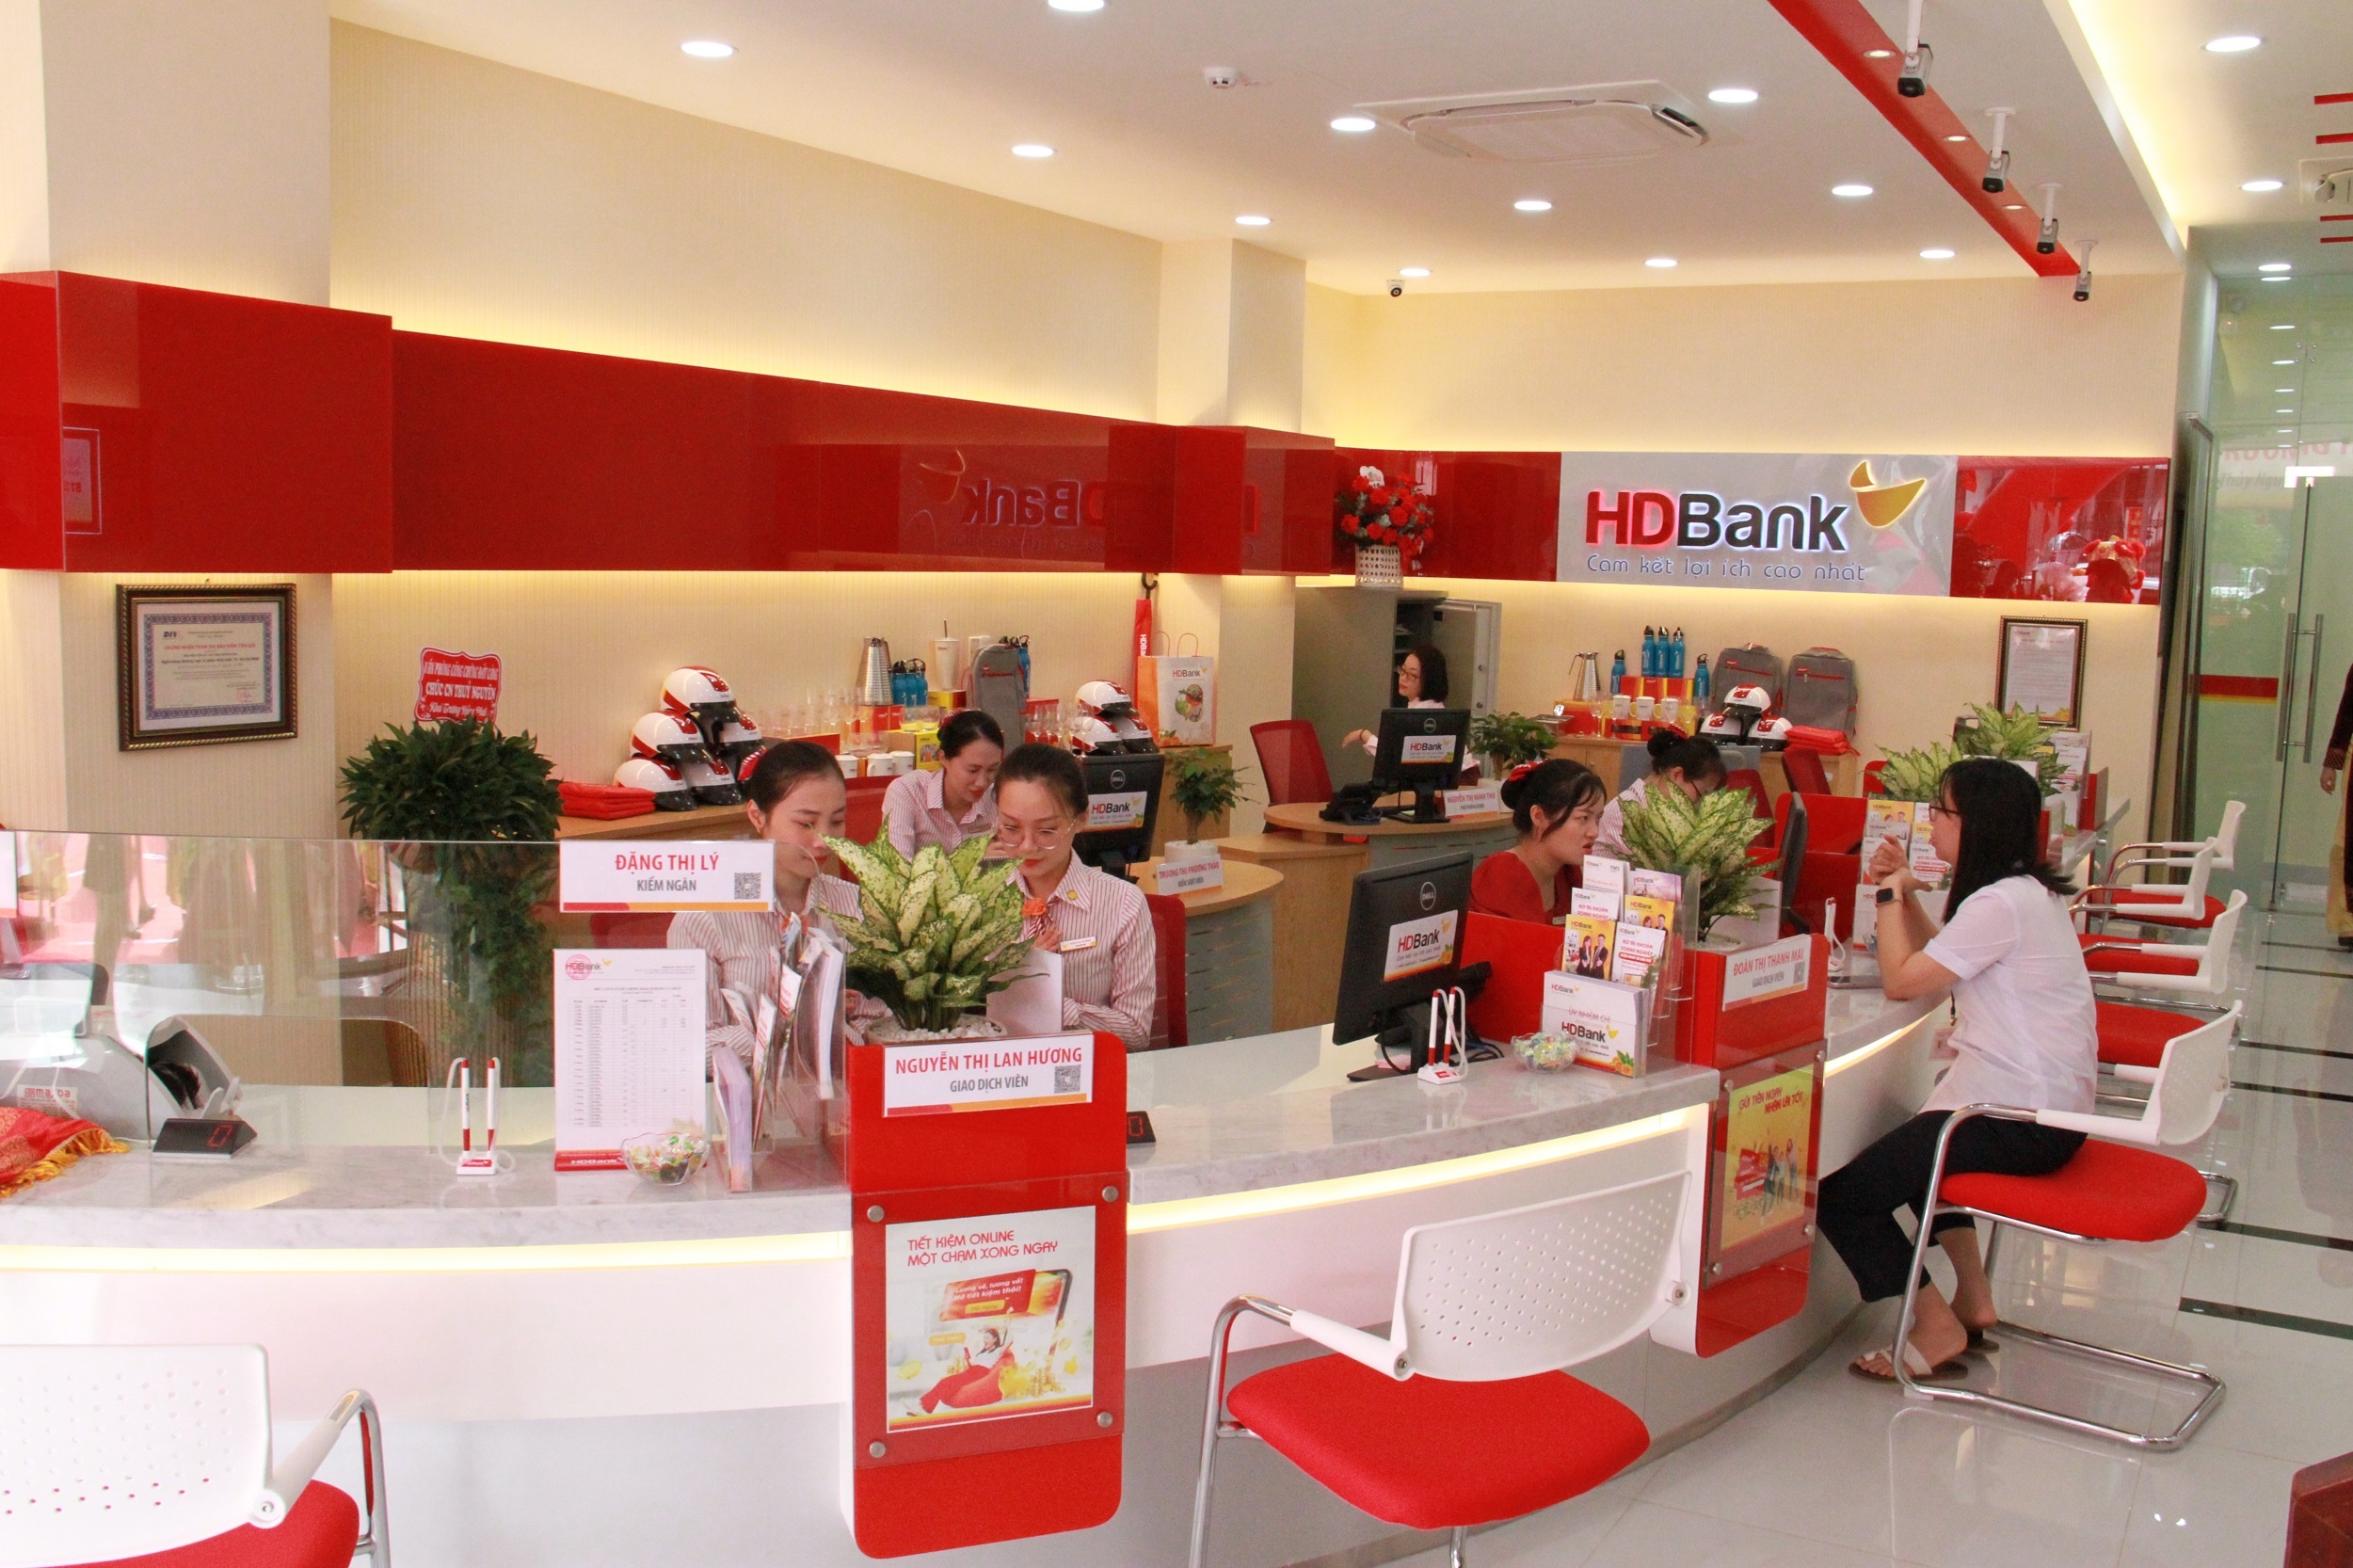 HDBank hiện đã có hơn 360 điểm giao dịch trên cả nước. Riêng tại Hải Phòng, HDBank đã mở rộng 02 chi nhánh và 03 phòng giao dịch, phục vụ hàng trăm nghìn khách hàng